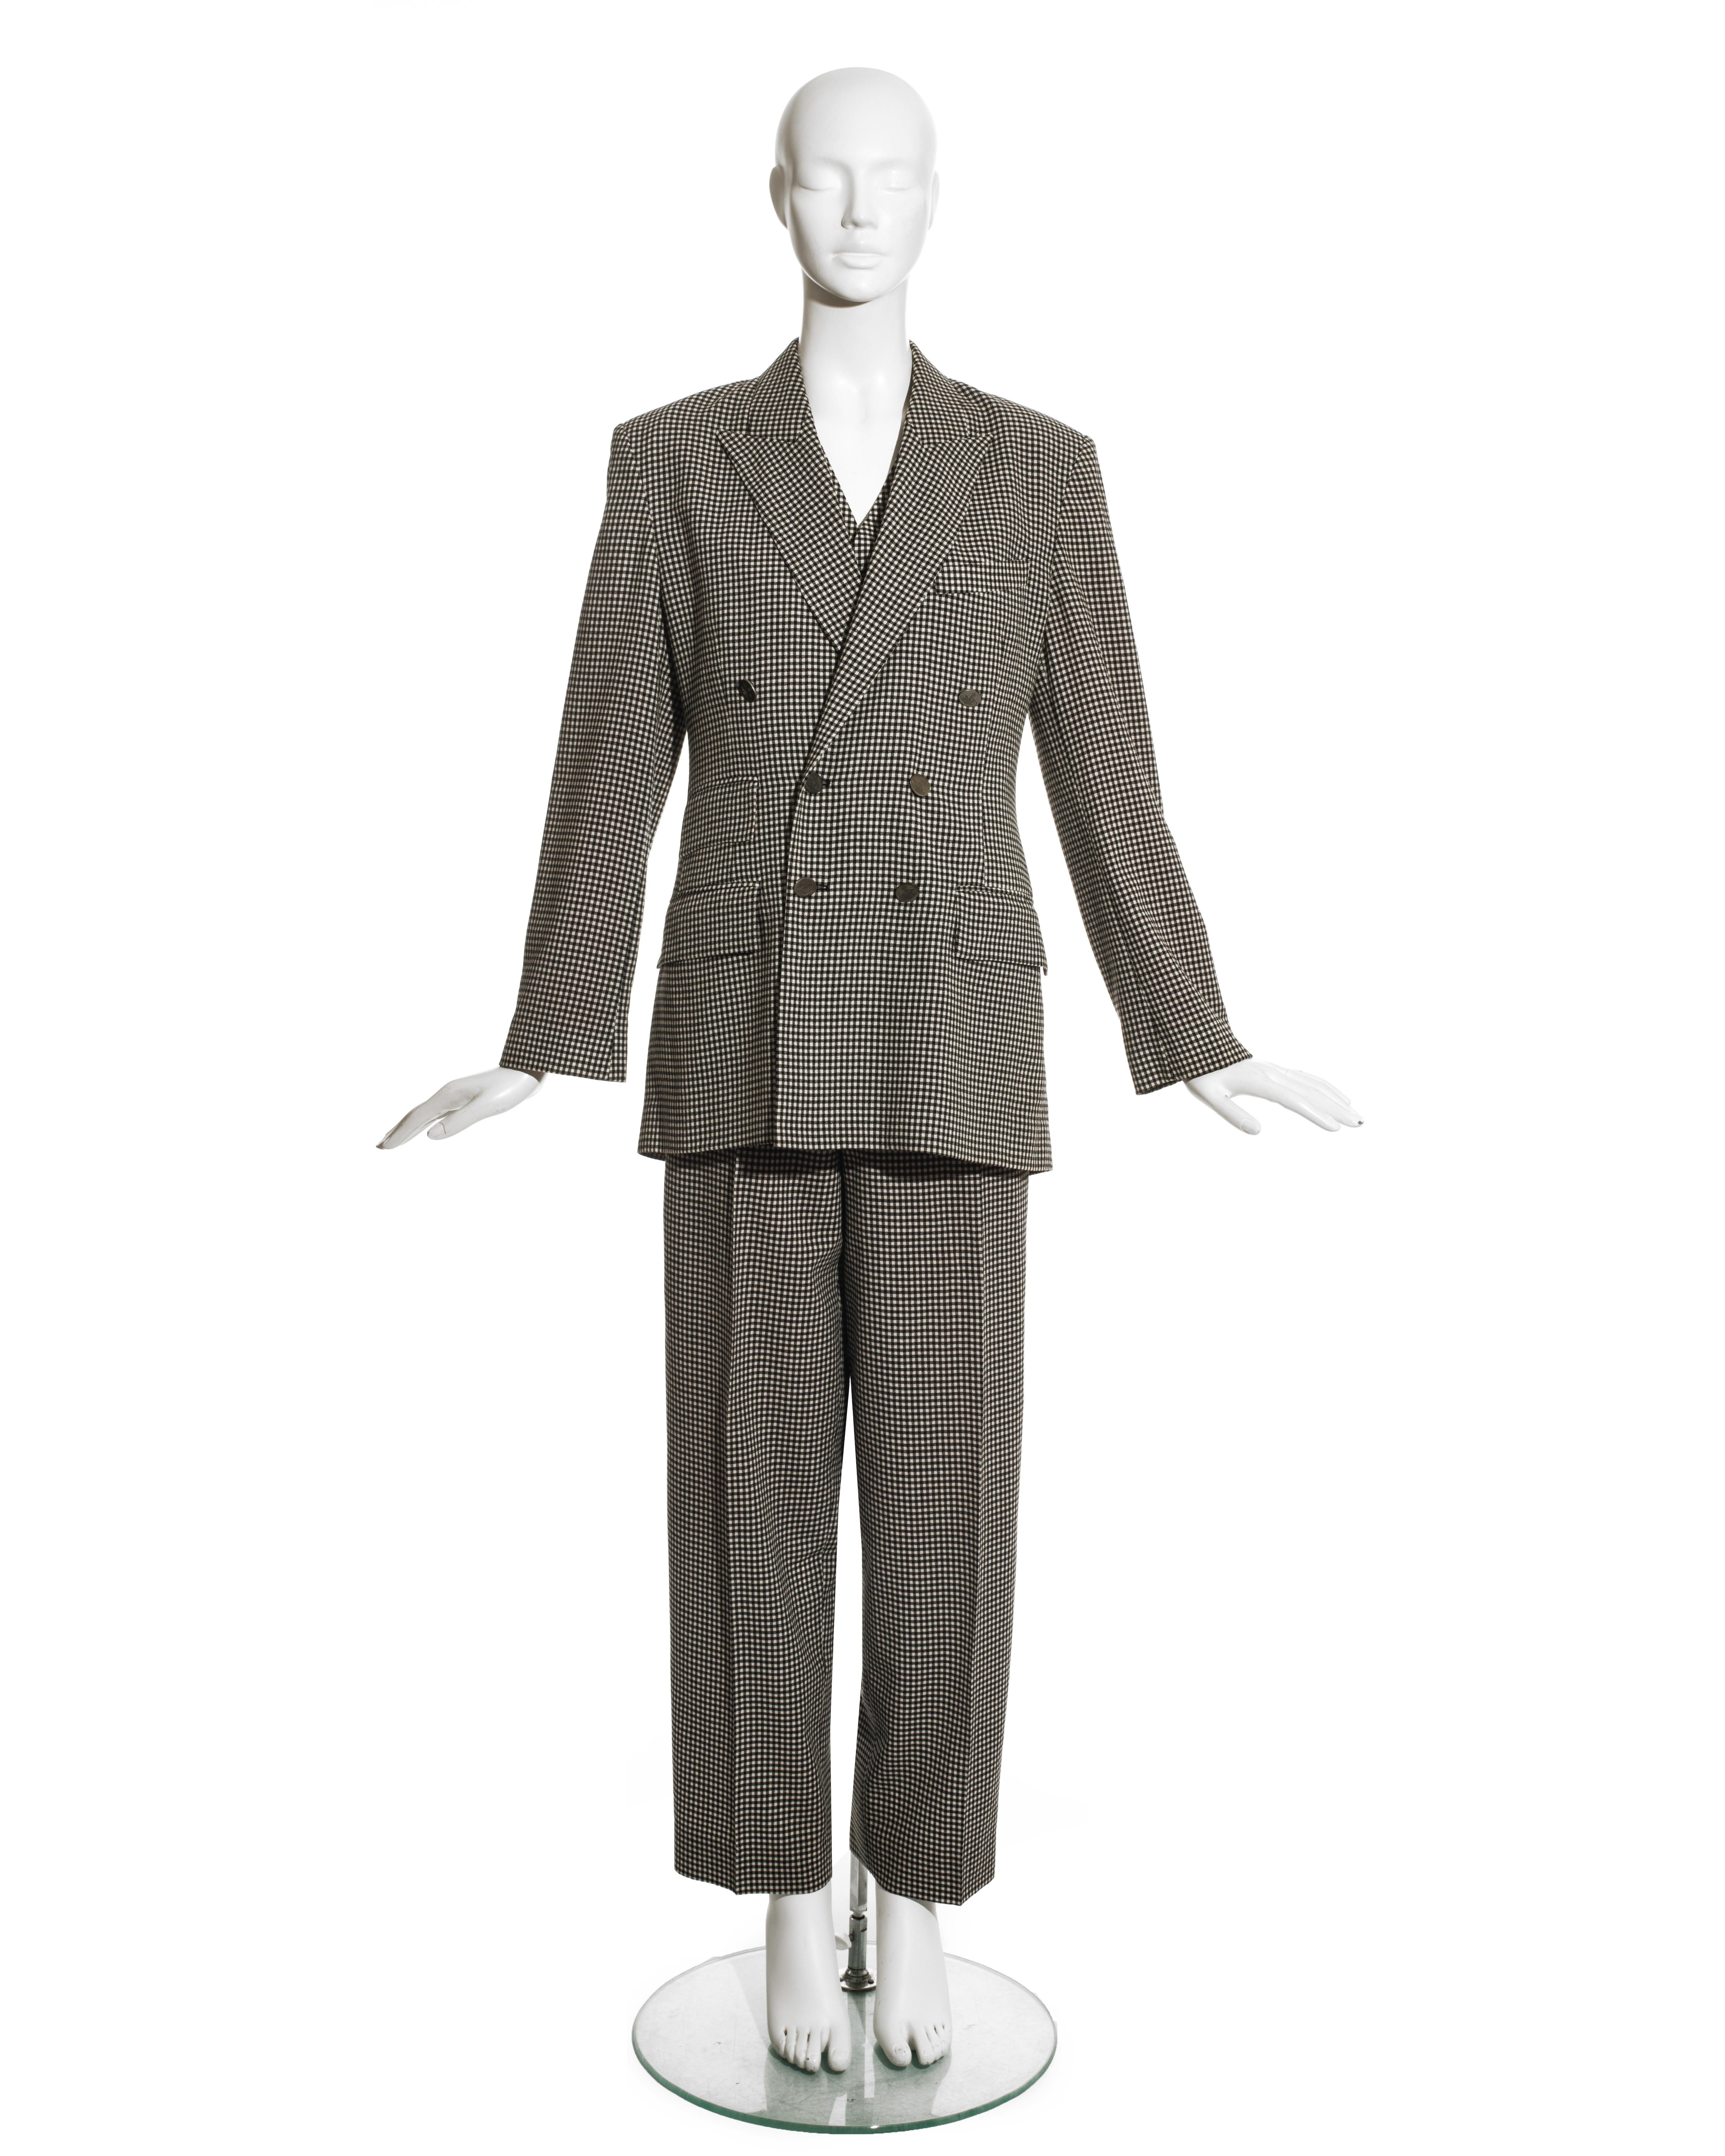 Costume pantalon unisexe en laine à carreaux noirs et blancs Vivienne Westwood comprenant : veste blazer croisée à revers, boutons orbes argentés et doublure en satin rouge, gilet croisé et pantalon carotte à taille haute. 

Automne-Hiver 1992